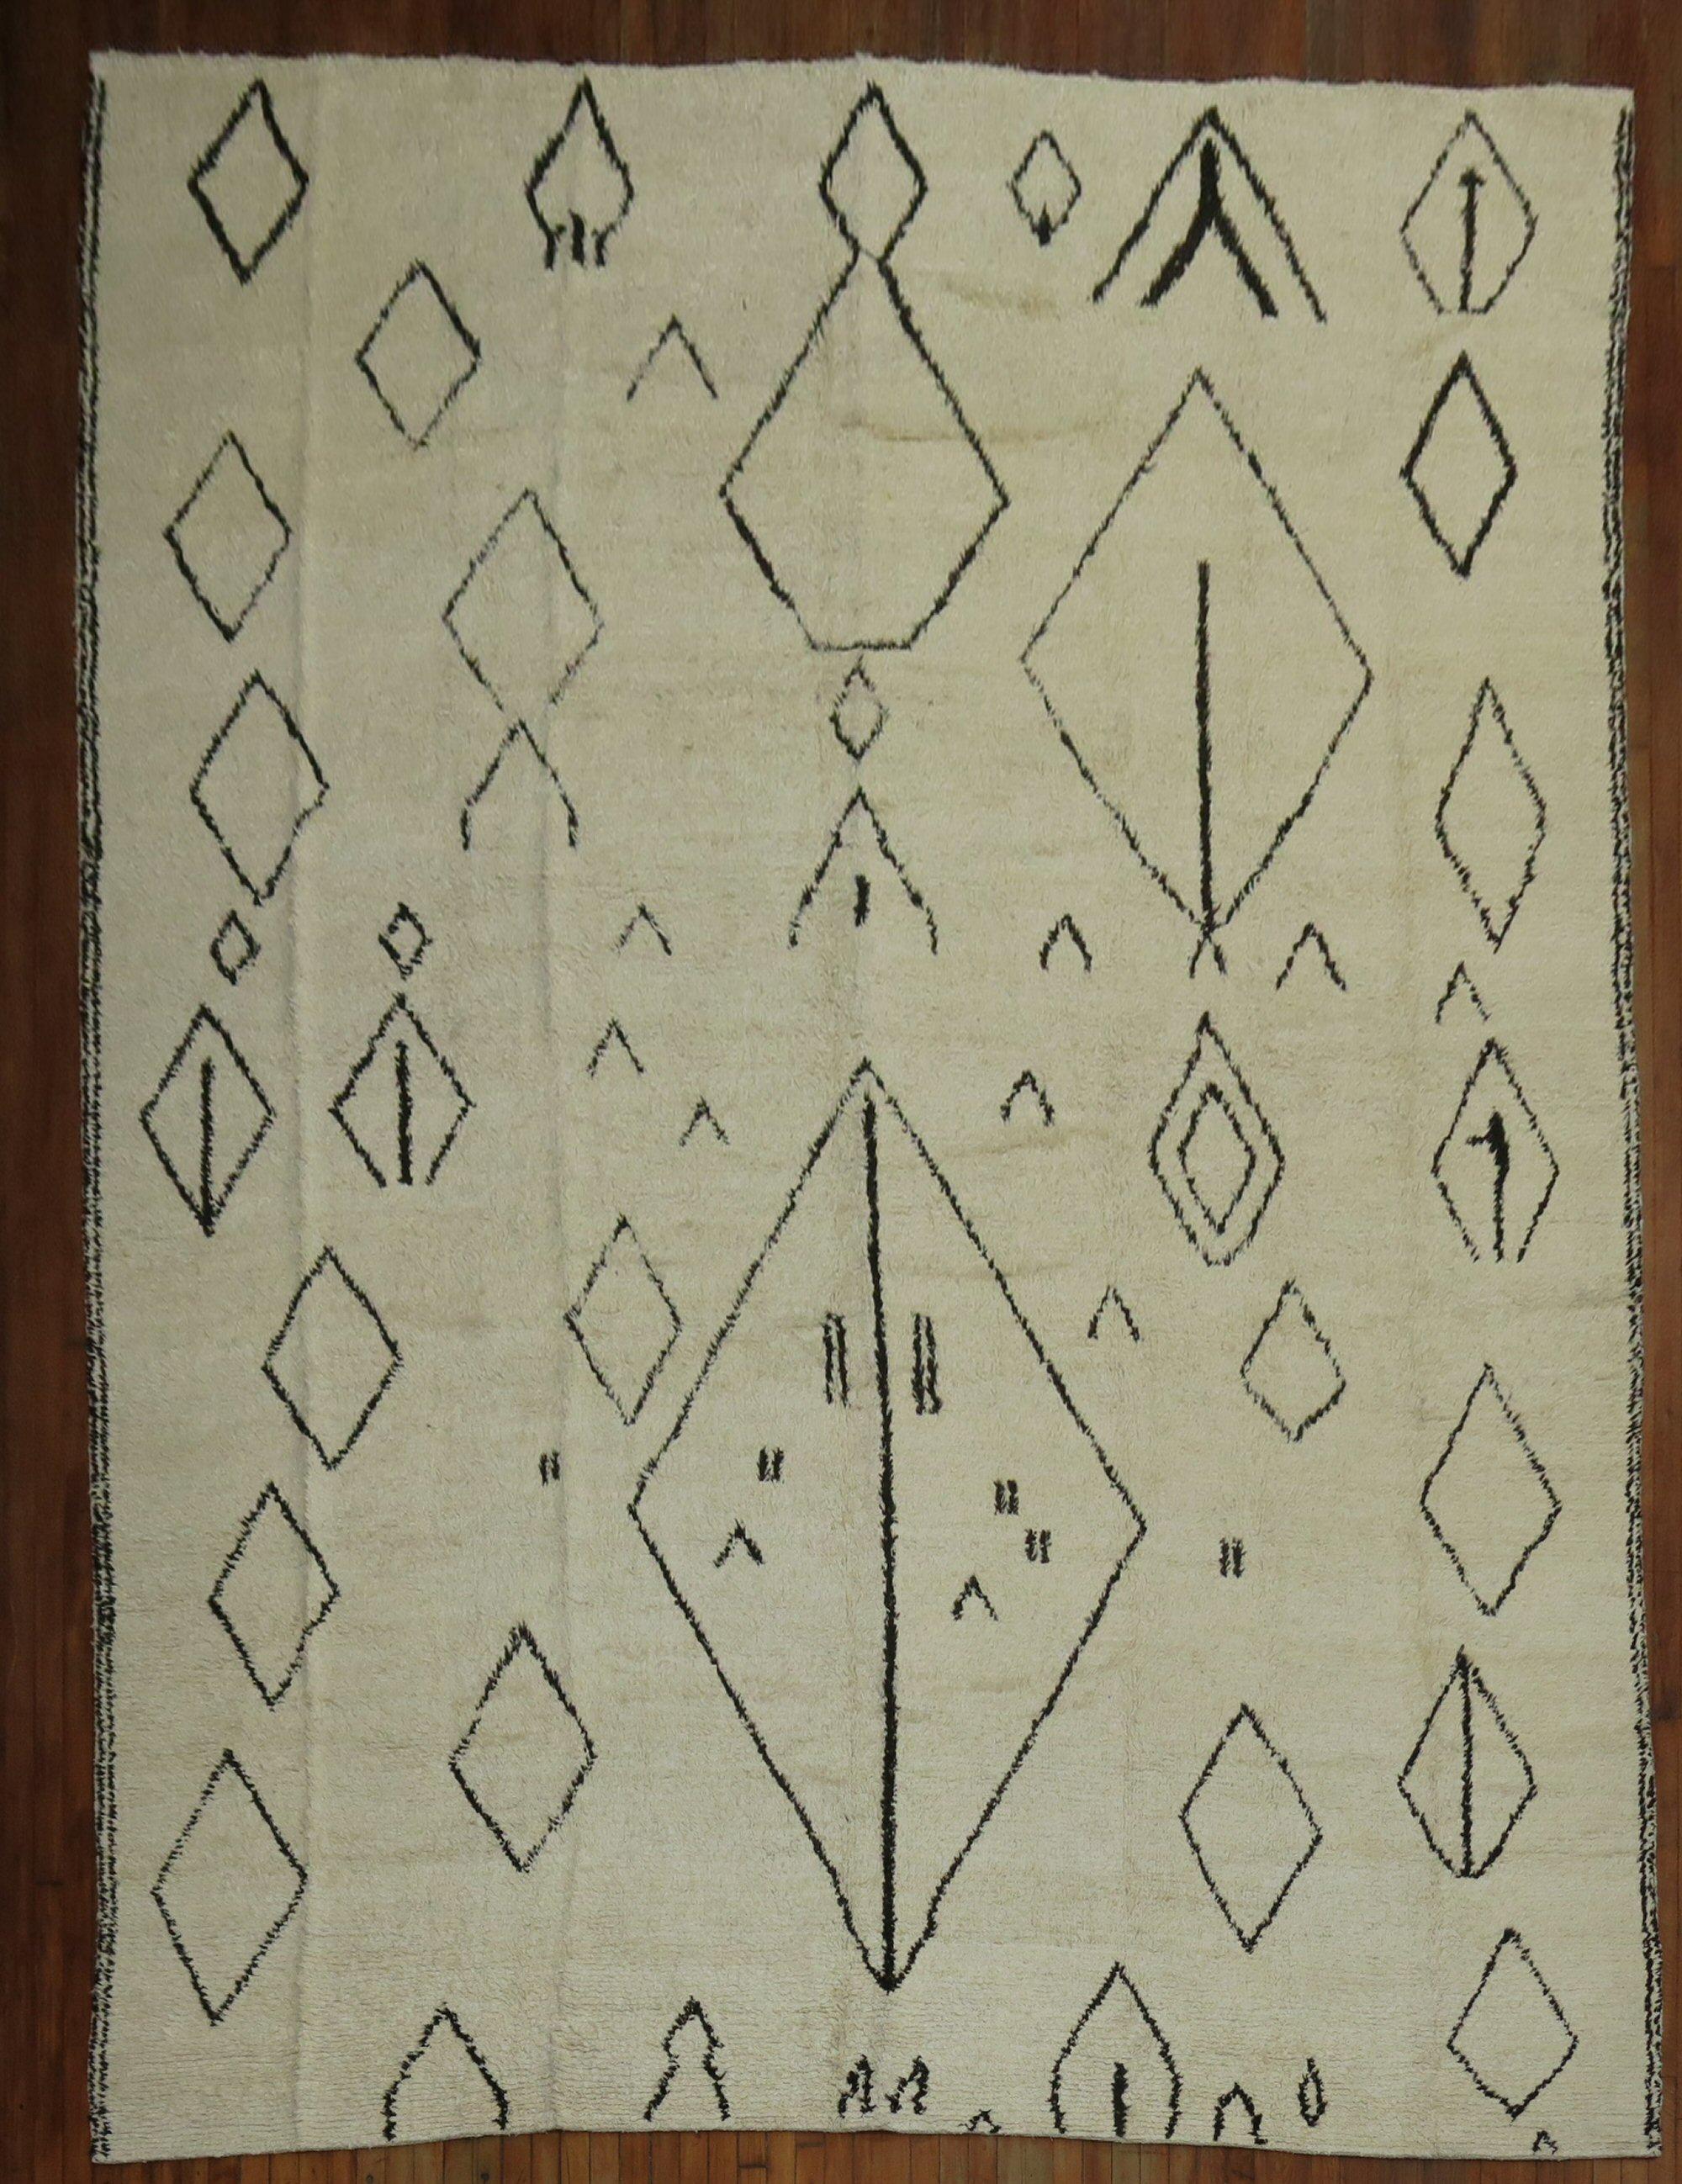 Tapis turc de grande taille avec un dessin géométrique abstrait ressemblant aux motifs des tapis marocains Ben Ourain tissés au milieu du 20e siècle.

Mesures : 10'3'' x 13'10''.